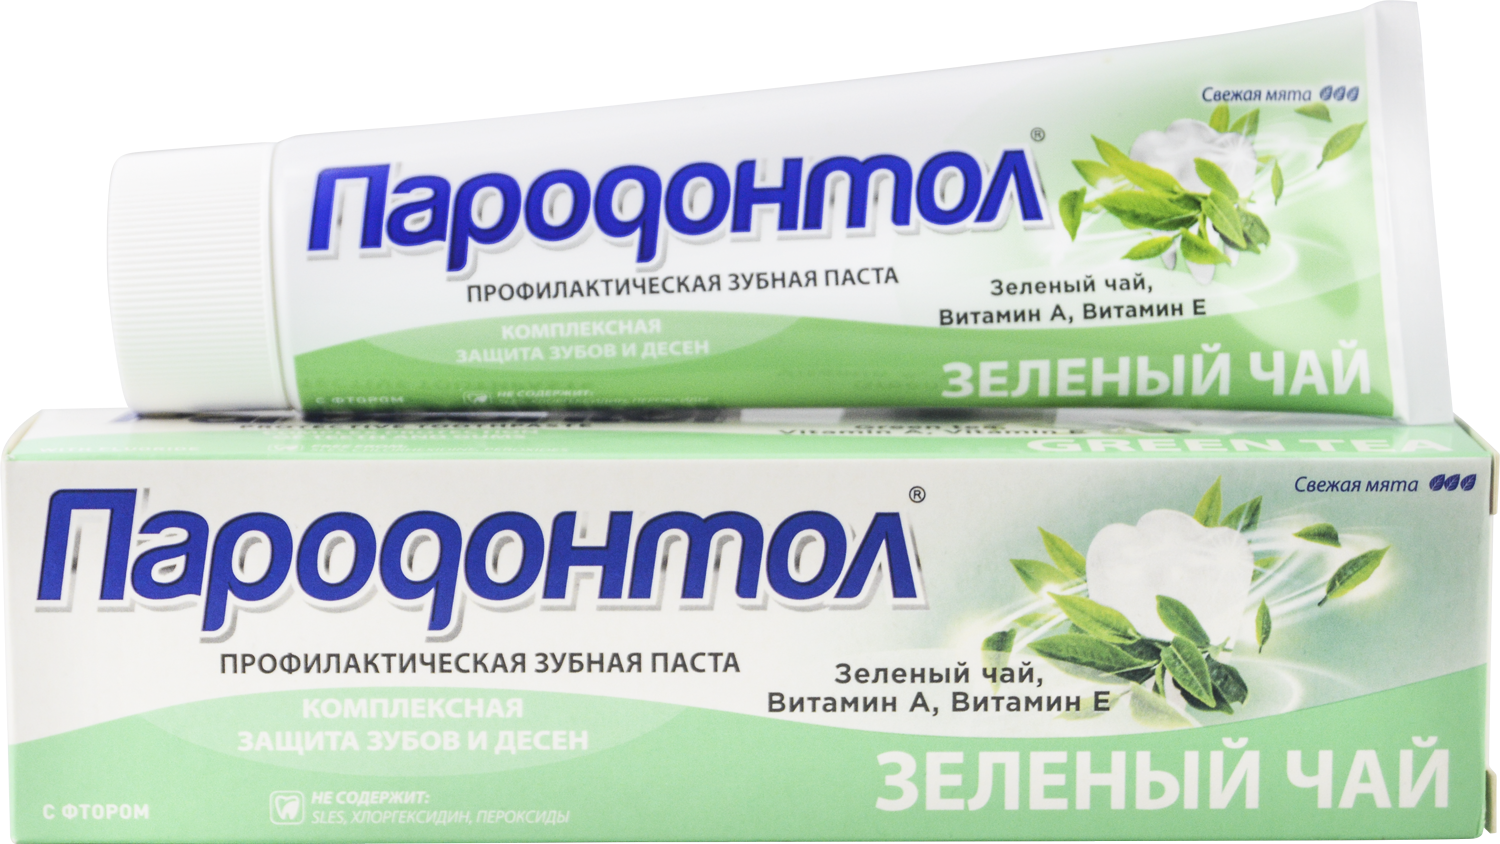 Зубная паста "Пародонтол" ("Parodontol")  зеленый чай 124 гр.